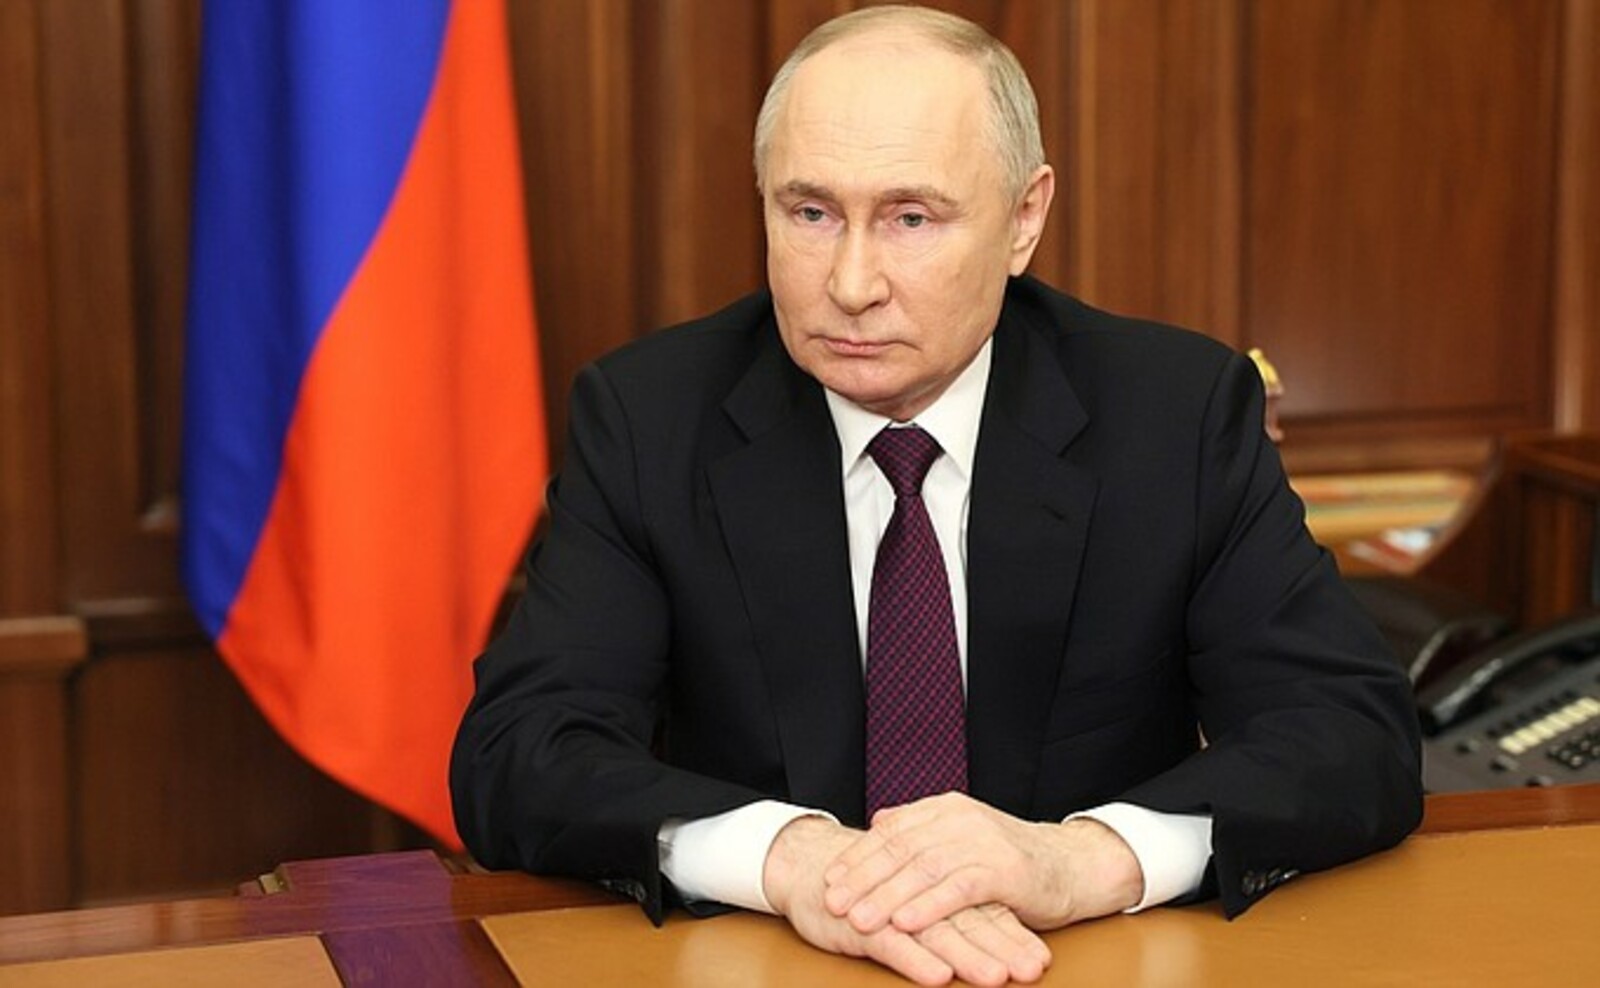 Обращение к гражданам по итогам выборов Президента России